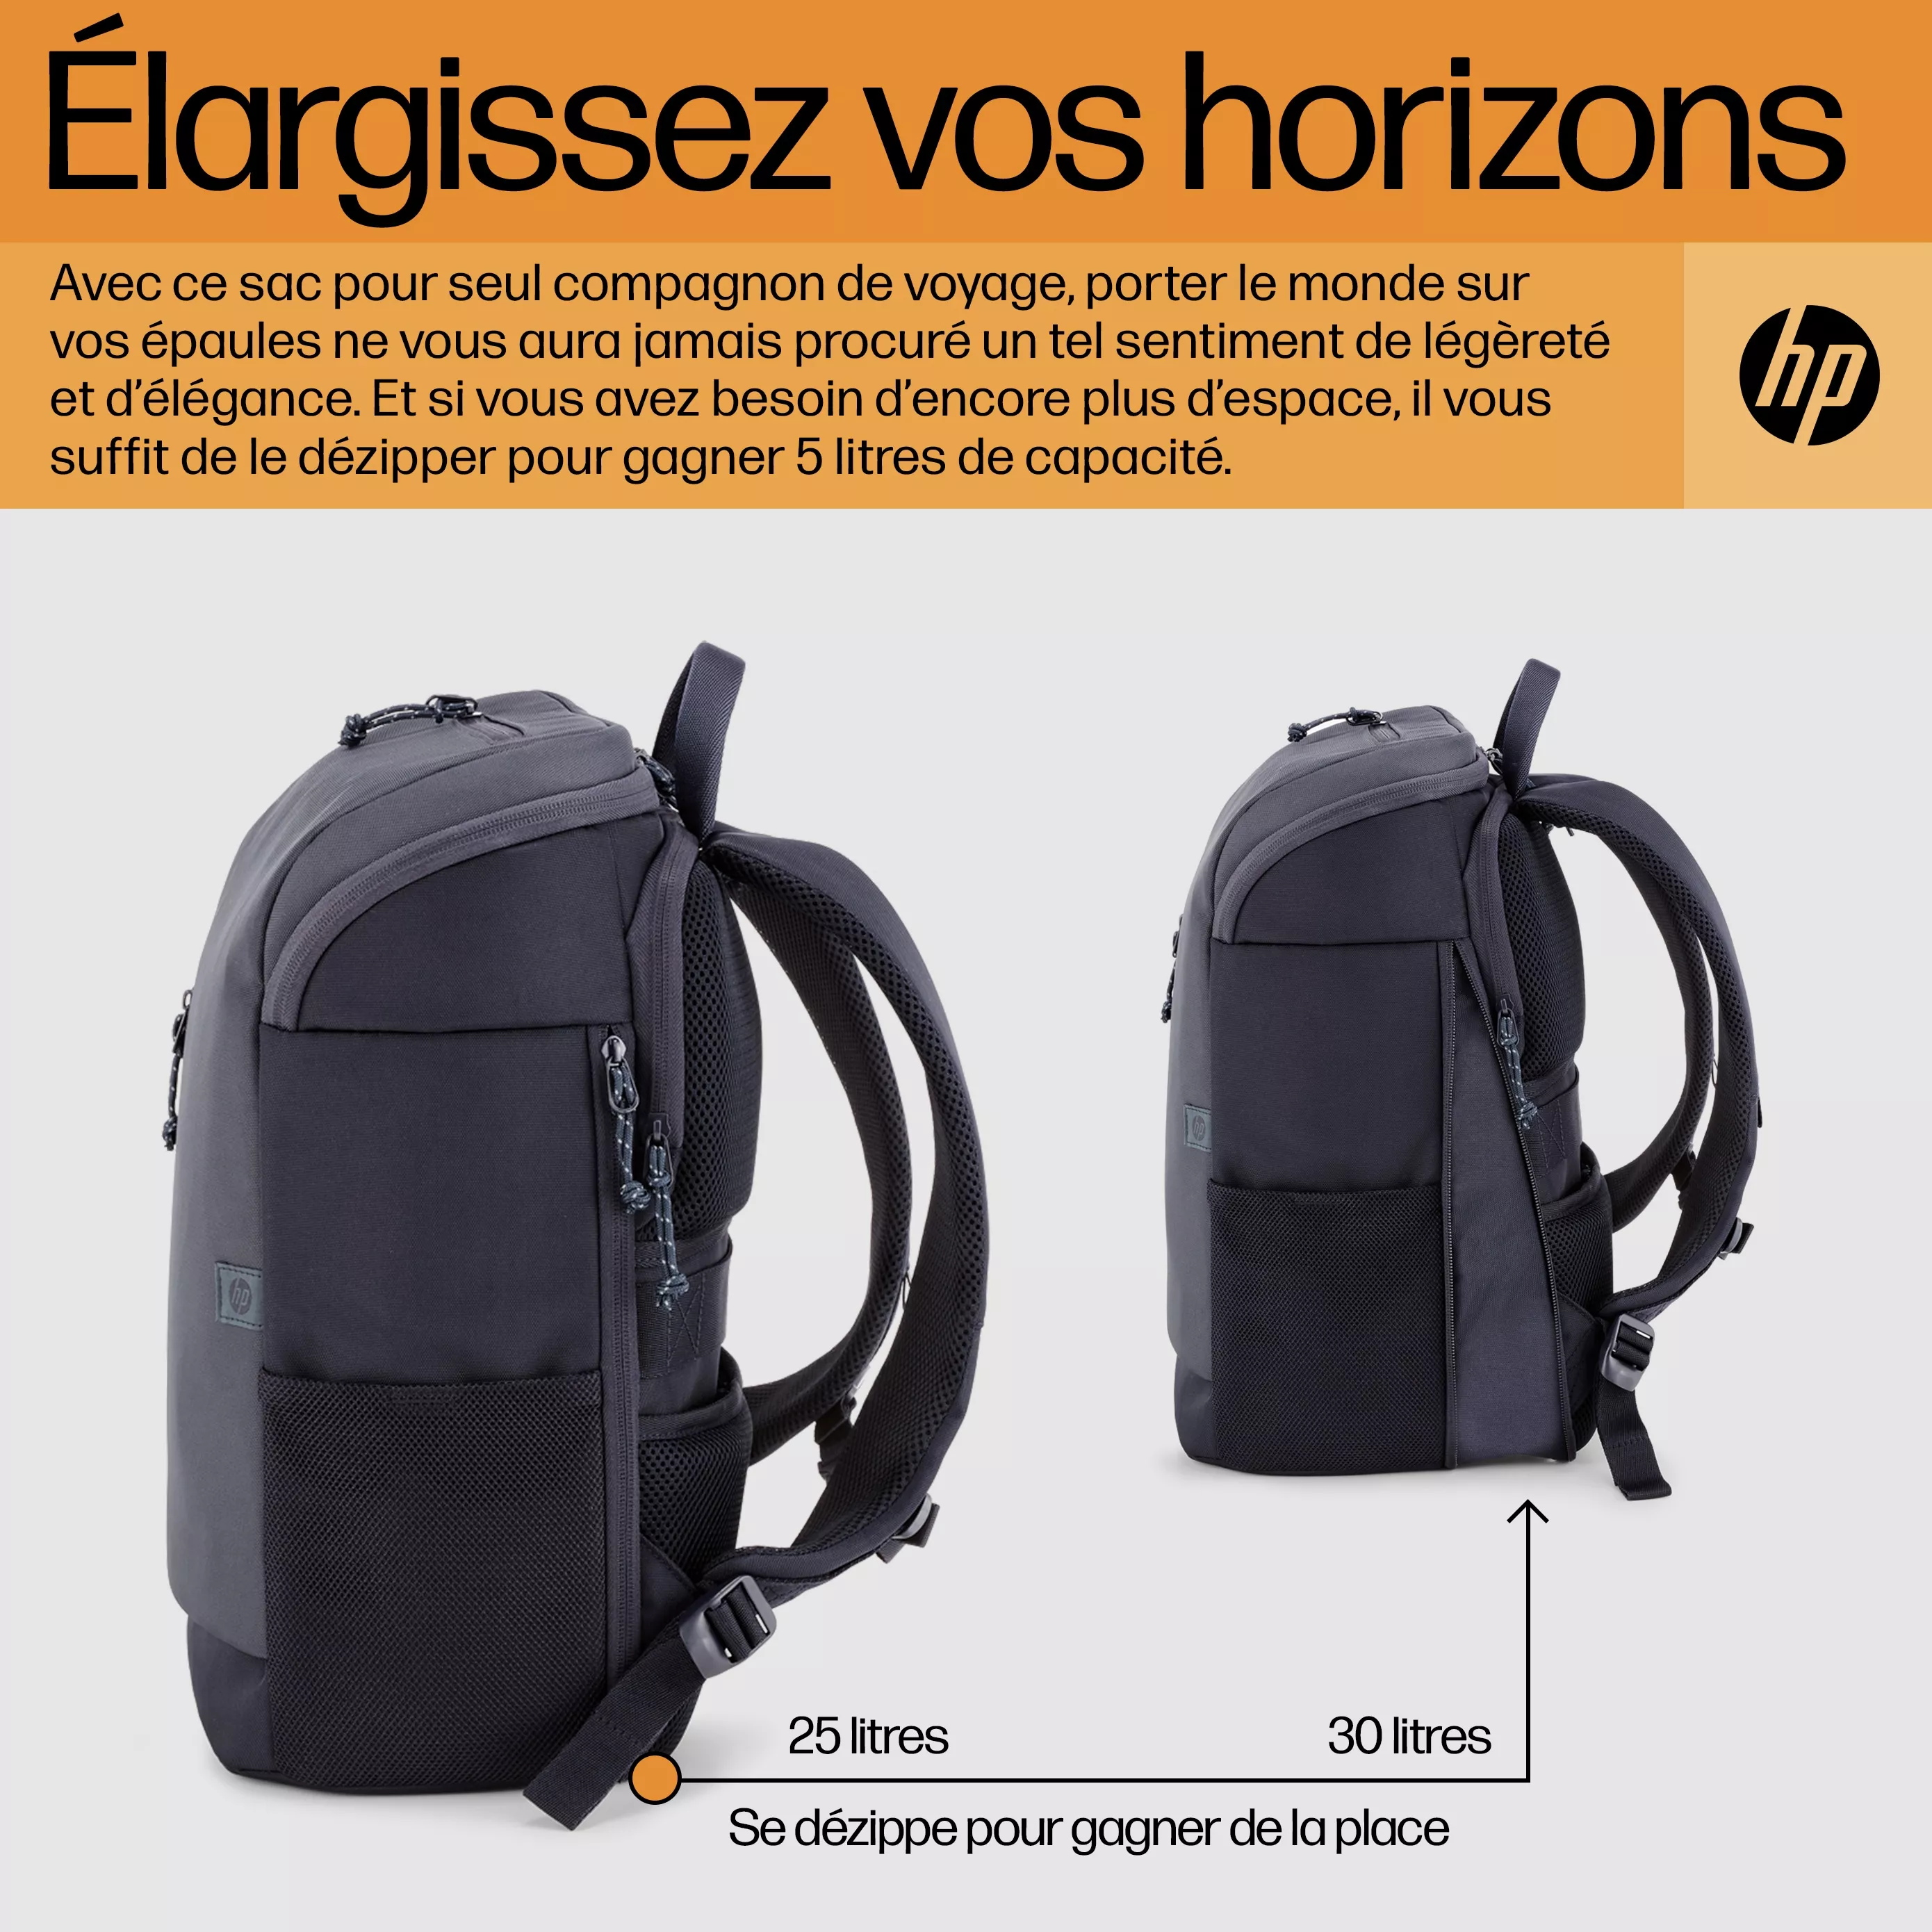 Vente HP Travel 25 Liter 15.6p Iron Grey Laptop HP au meilleur prix - visuel 10